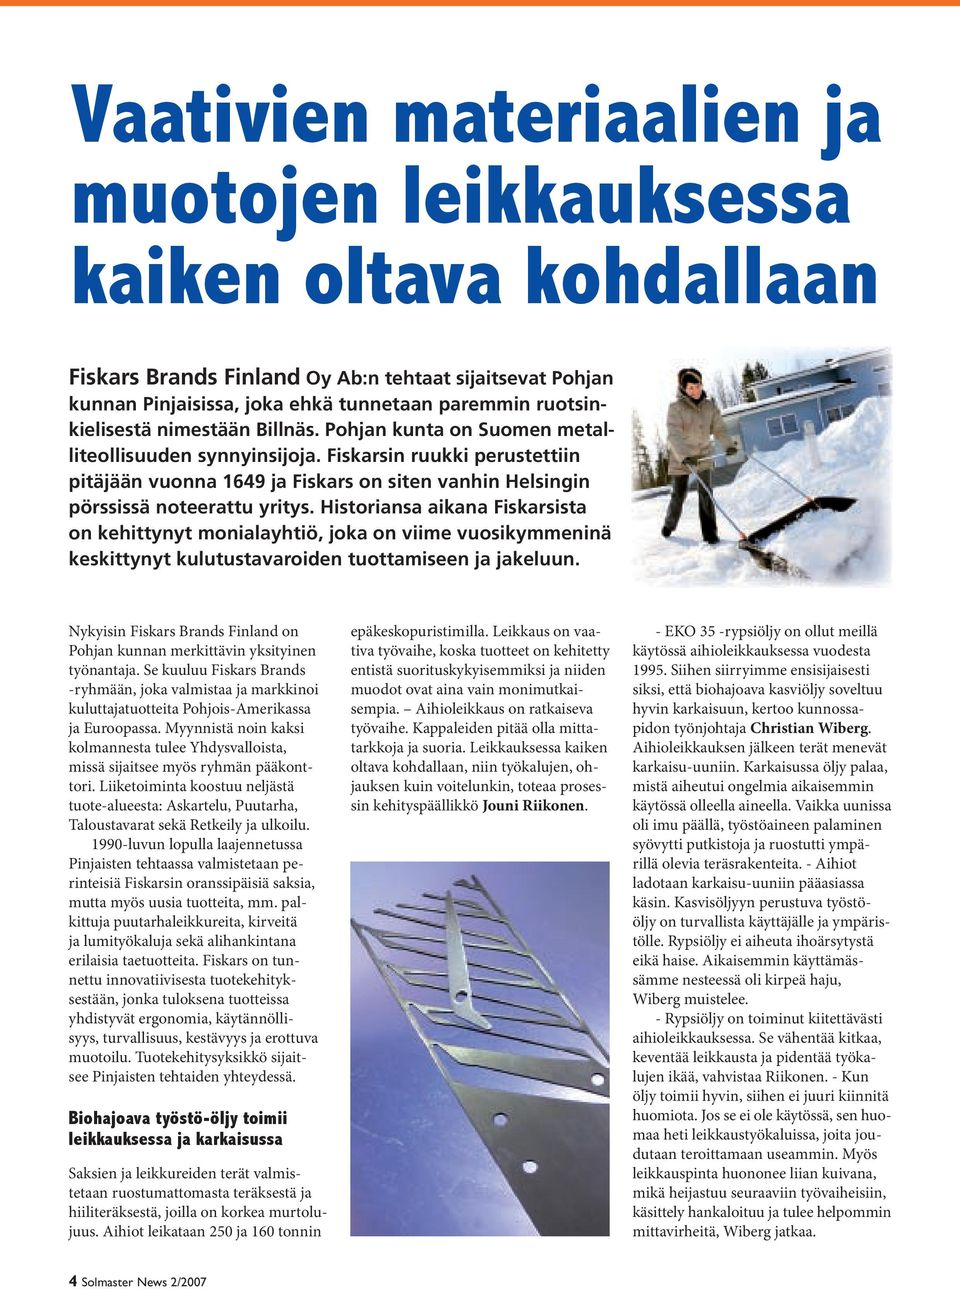 Historiansa aikana Fiskarsista on kehittynyt monialayhtiö, joka on viime vuosikymmeninä keskittynyt kulutustavaroiden tuottamiseen ja jakeluun.